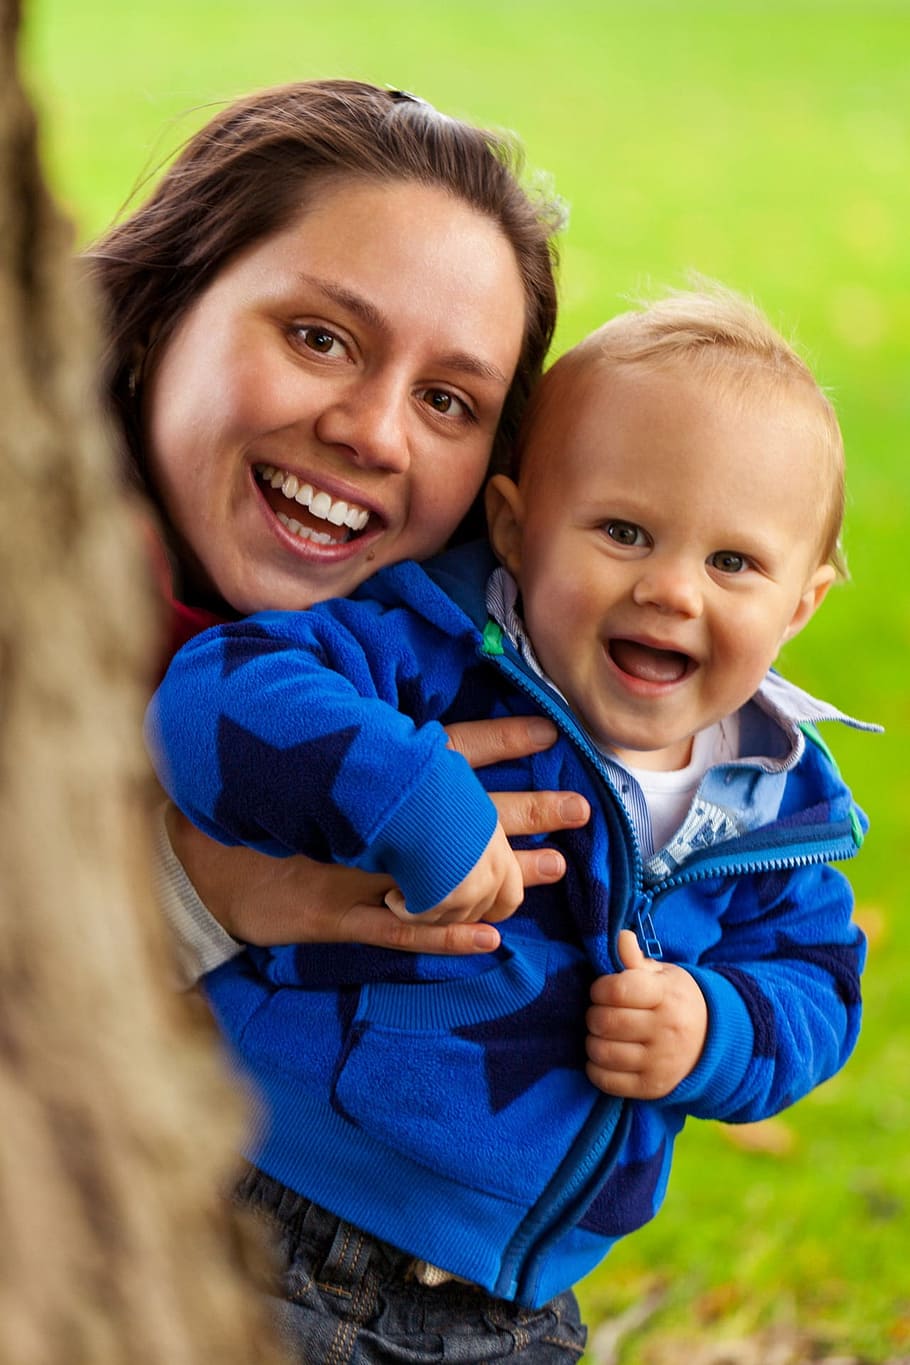 mujer, tenencia, bebé, azul, foto de enfoque con capucha con cremallera, niño, lindo, familia, diversión, feliz